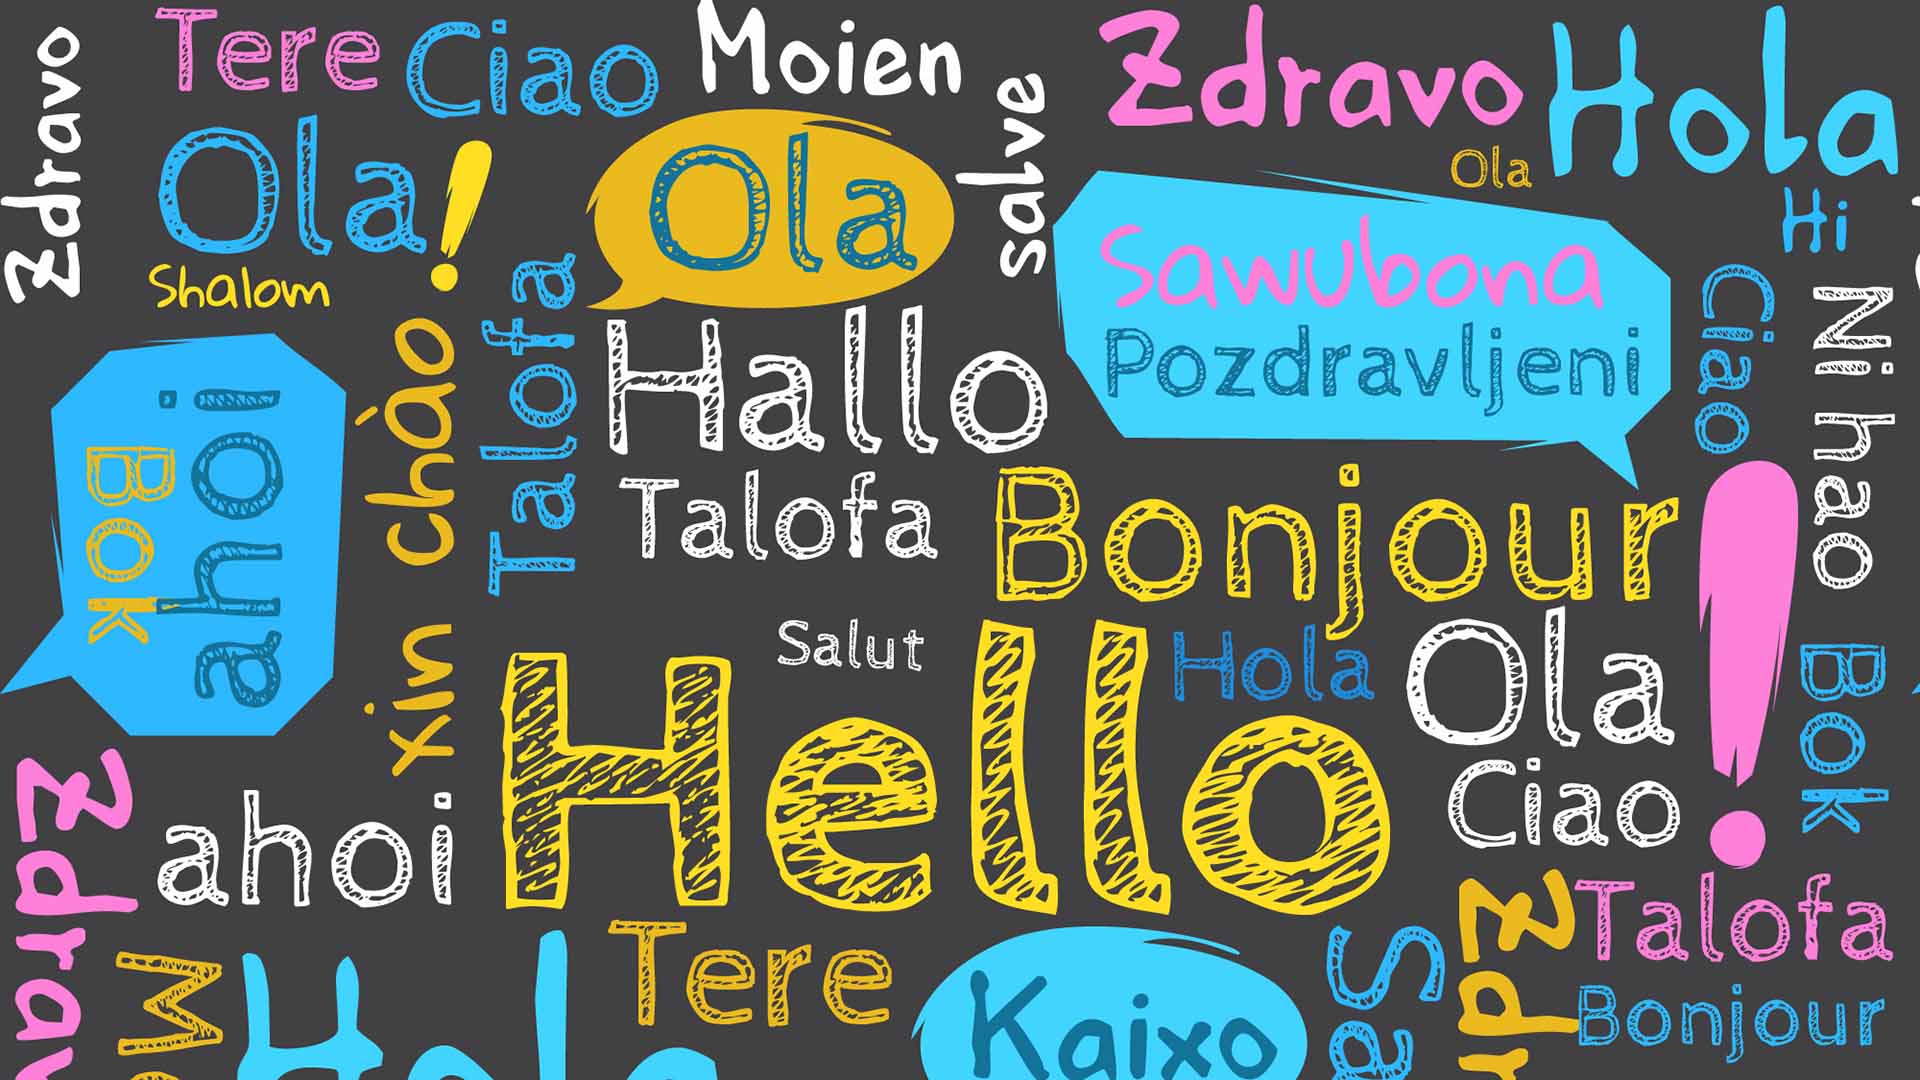 Al mondo esistono circa 7000 lingue parlate. Scopri le curiosità sulle lingue del mondo con Easy Language di Jesolo.